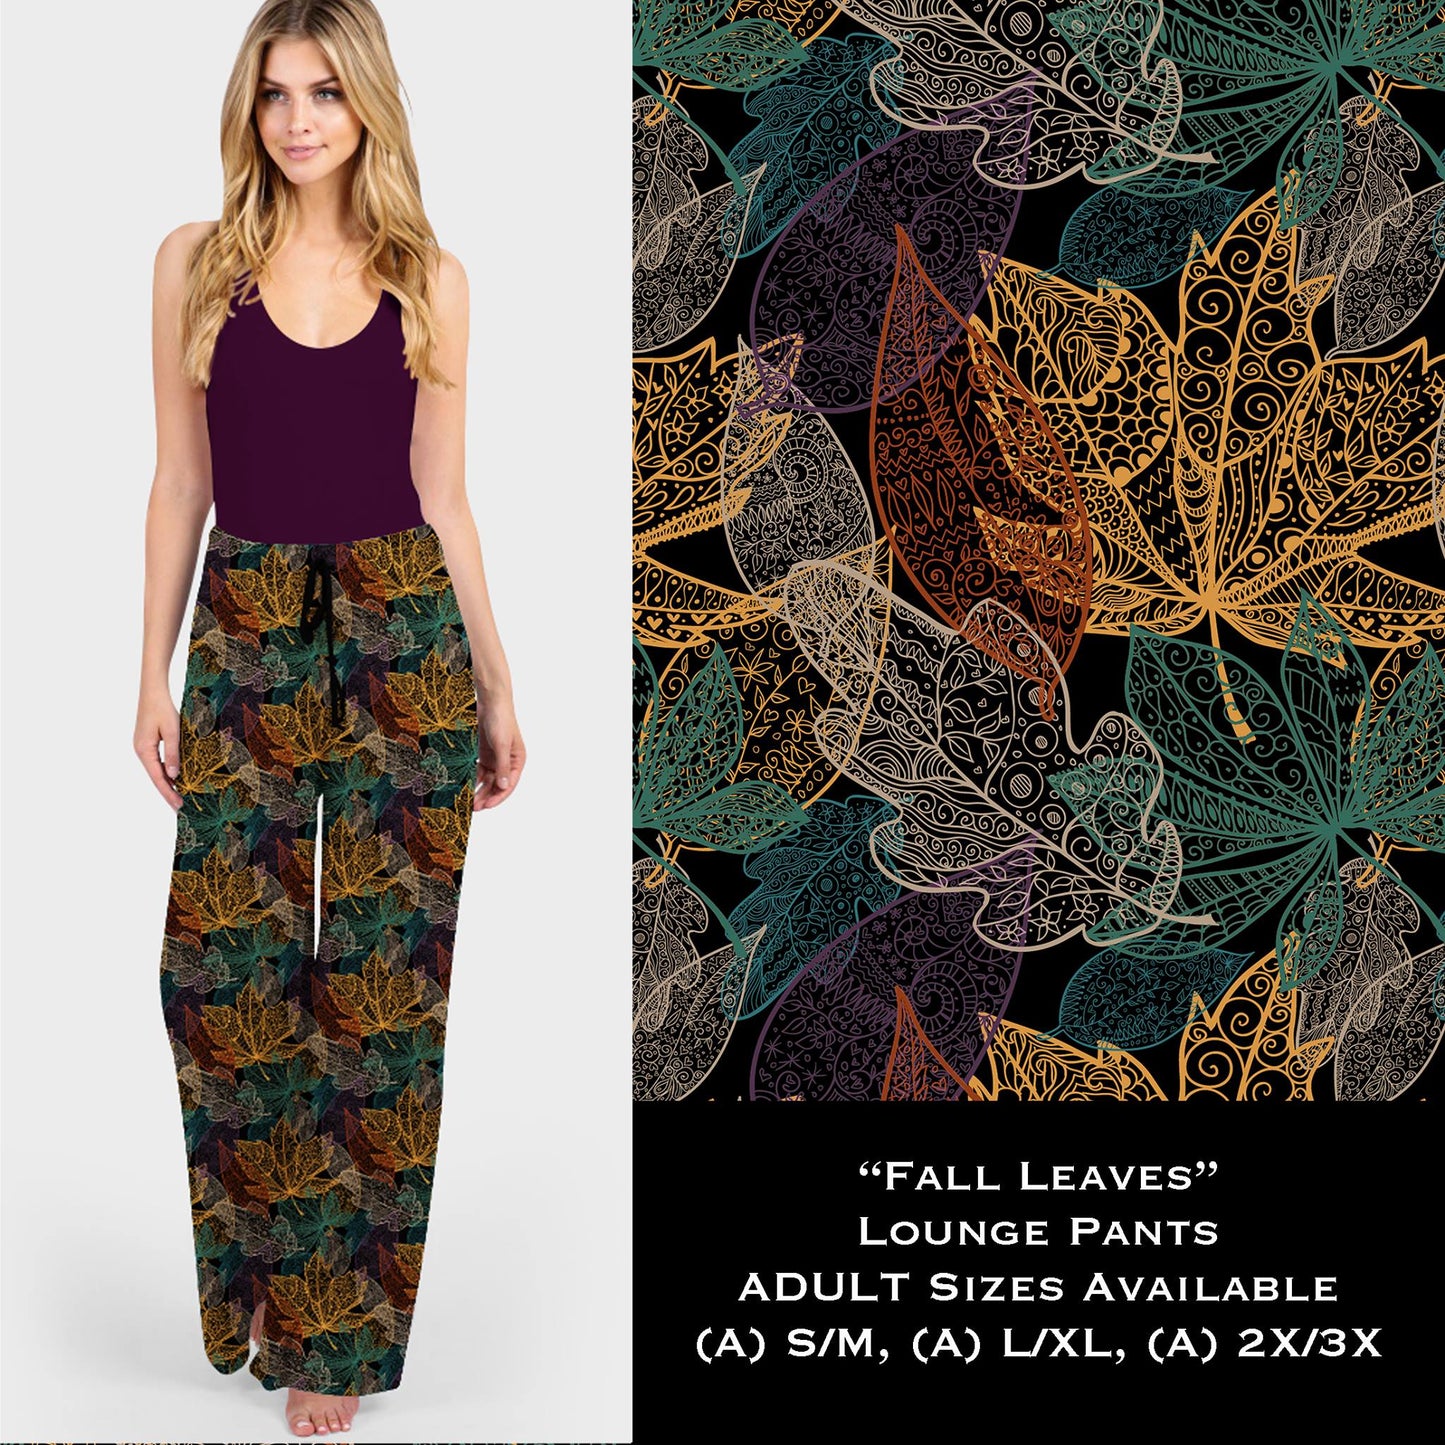 Fall Leaves - Lounge Pants